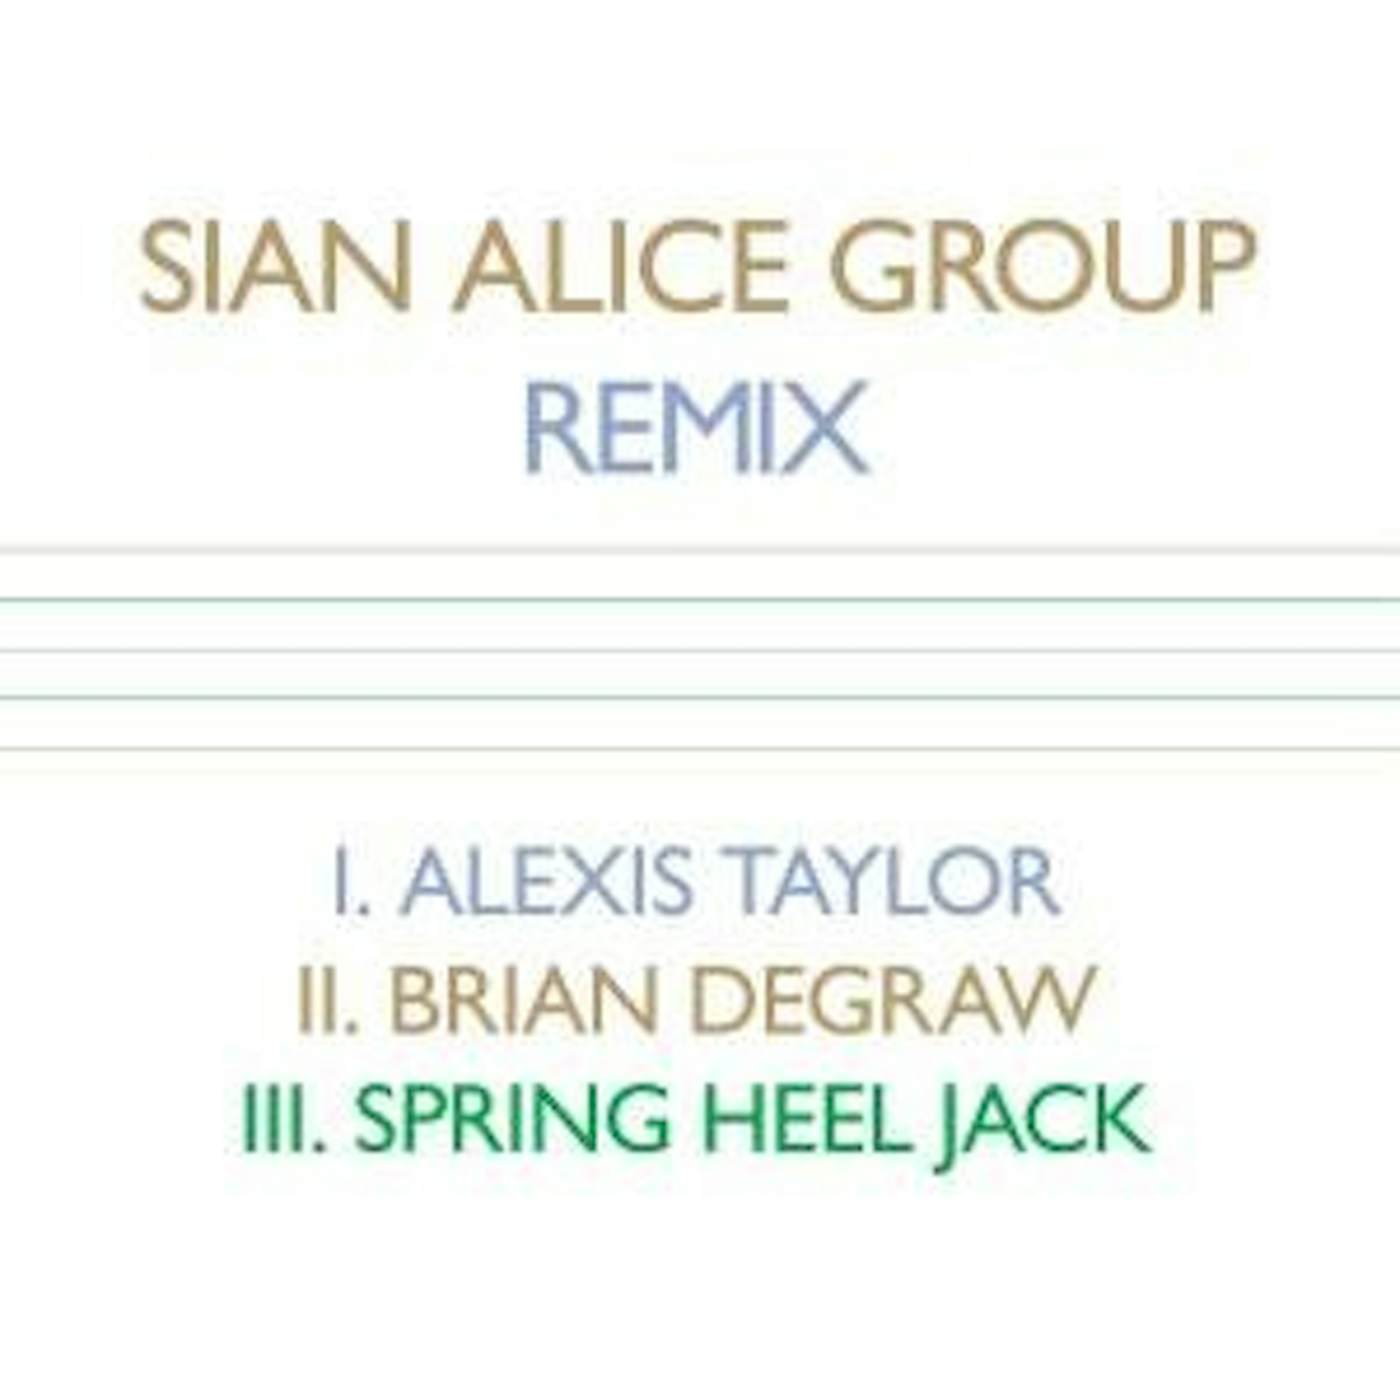 Sian Alice Group REMIX Vinyl Record